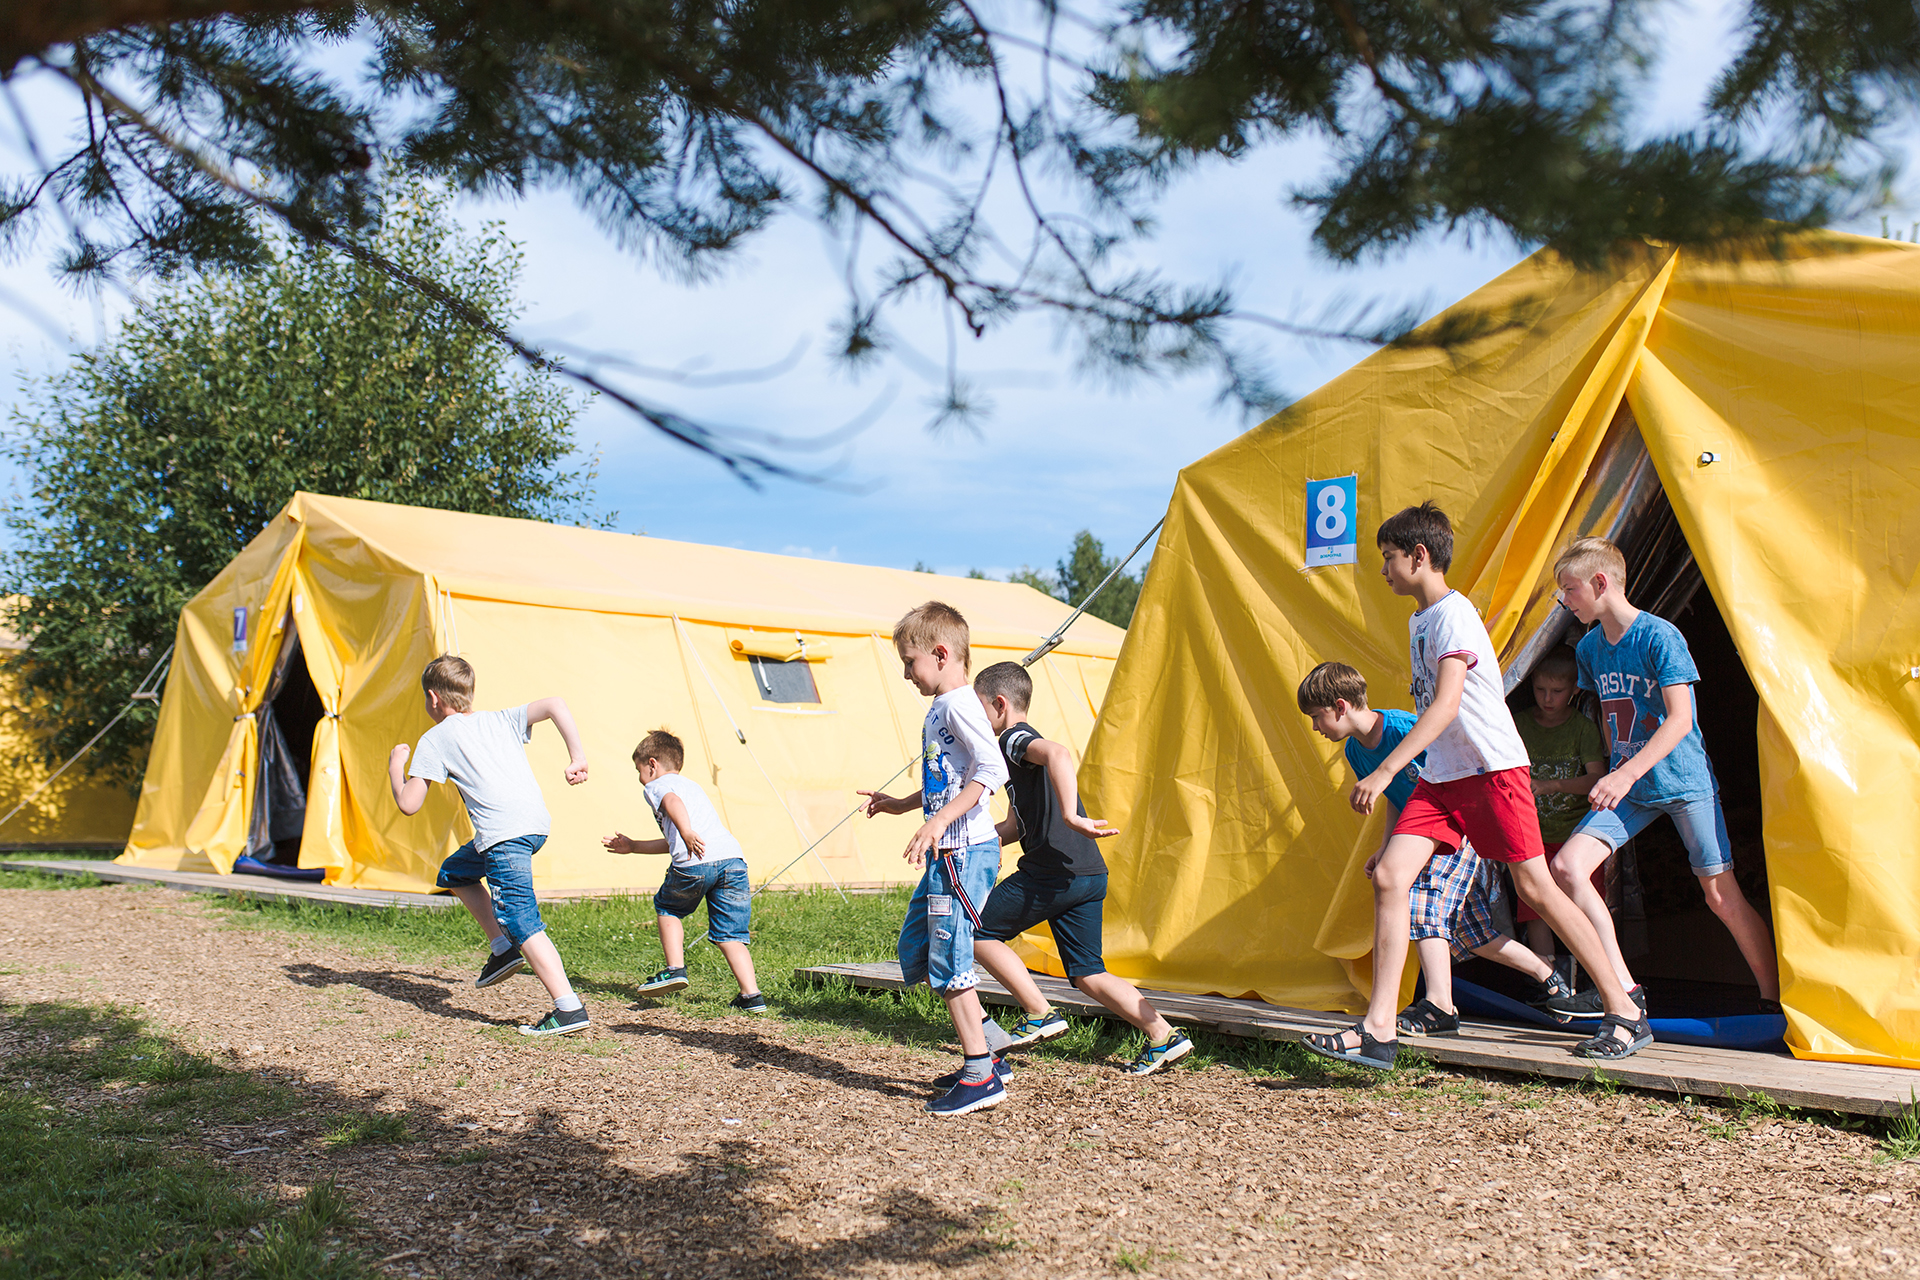 Camp фото. Палаточный лагерь. Летний палаточный лагерь. Палаточный лагерь для детей. Детские палаточные лагеря.